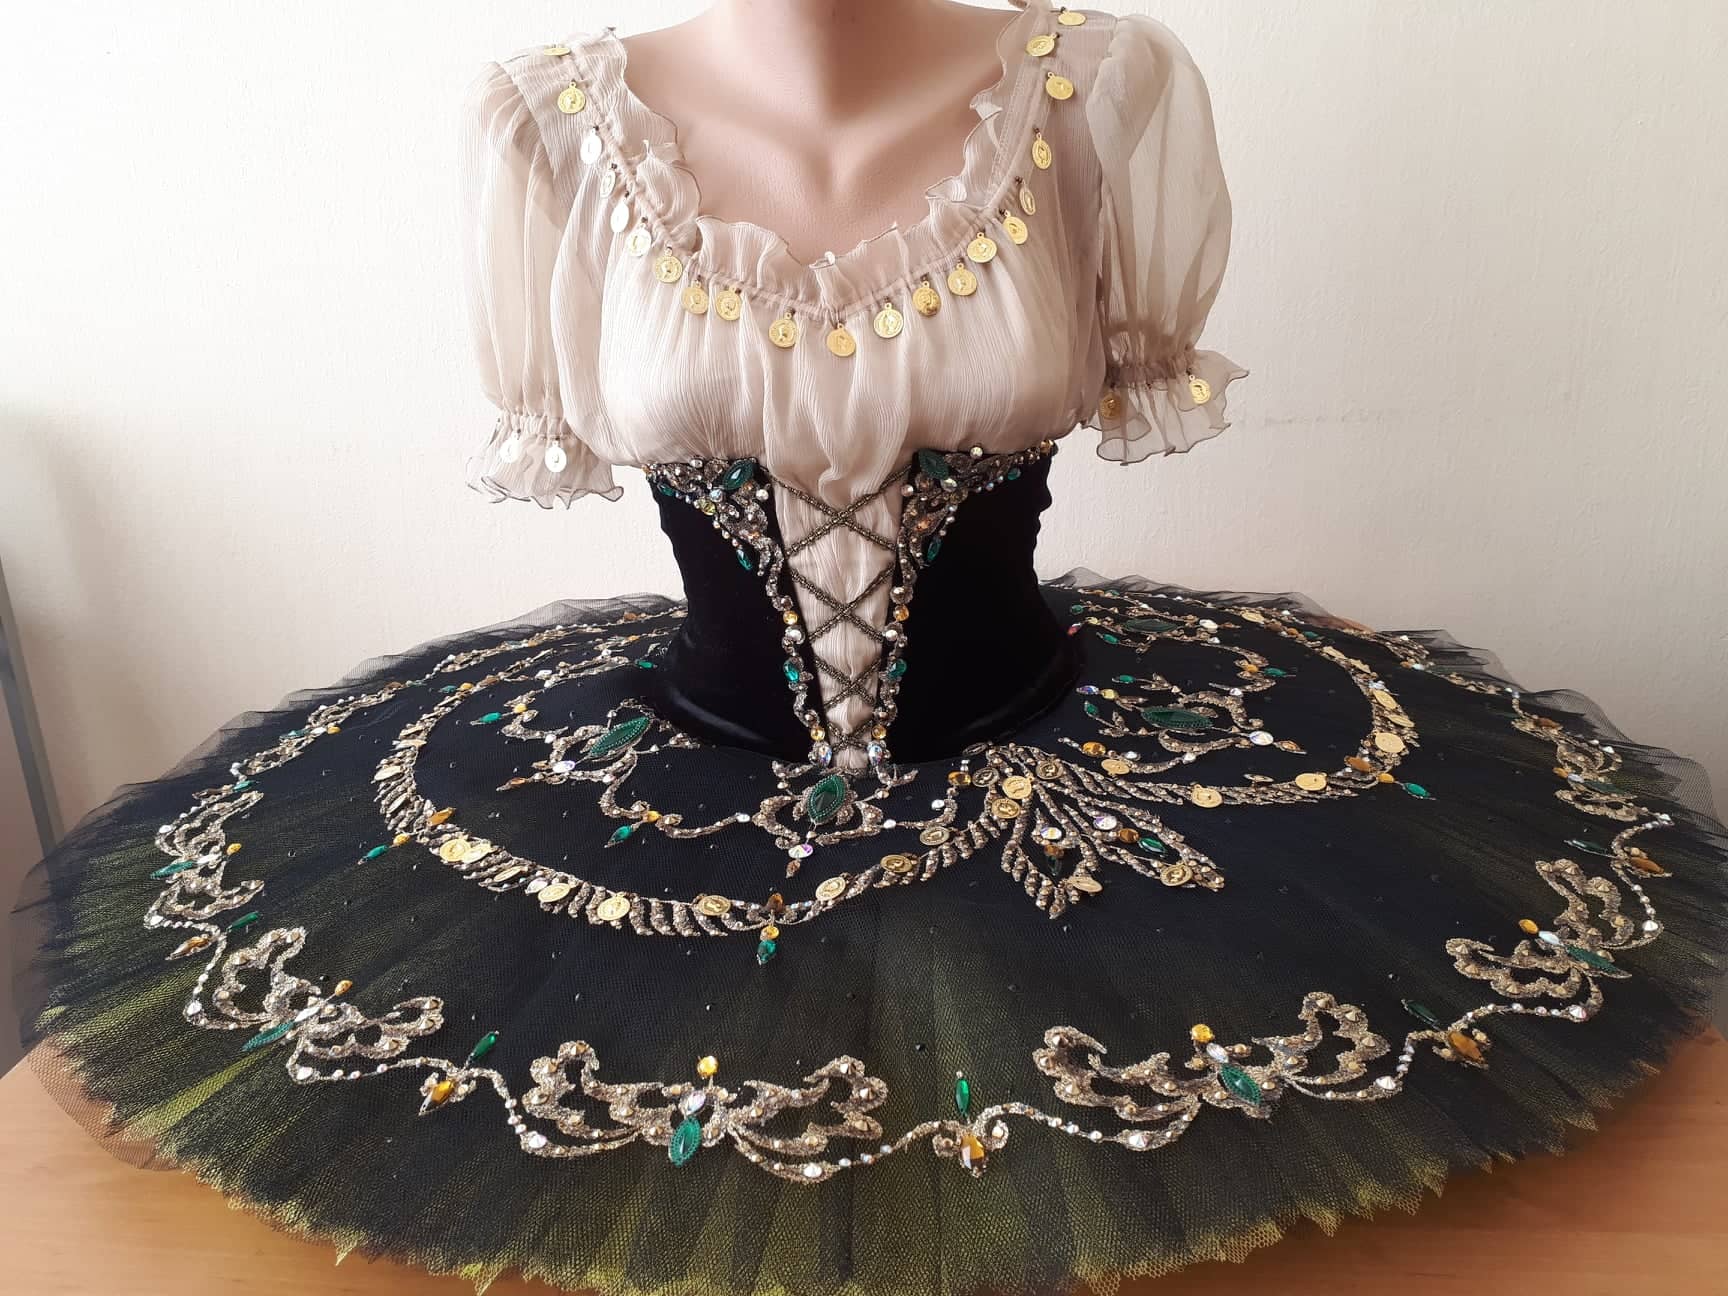 Variation from "La Esmeralda" - Dancewear by Patricia